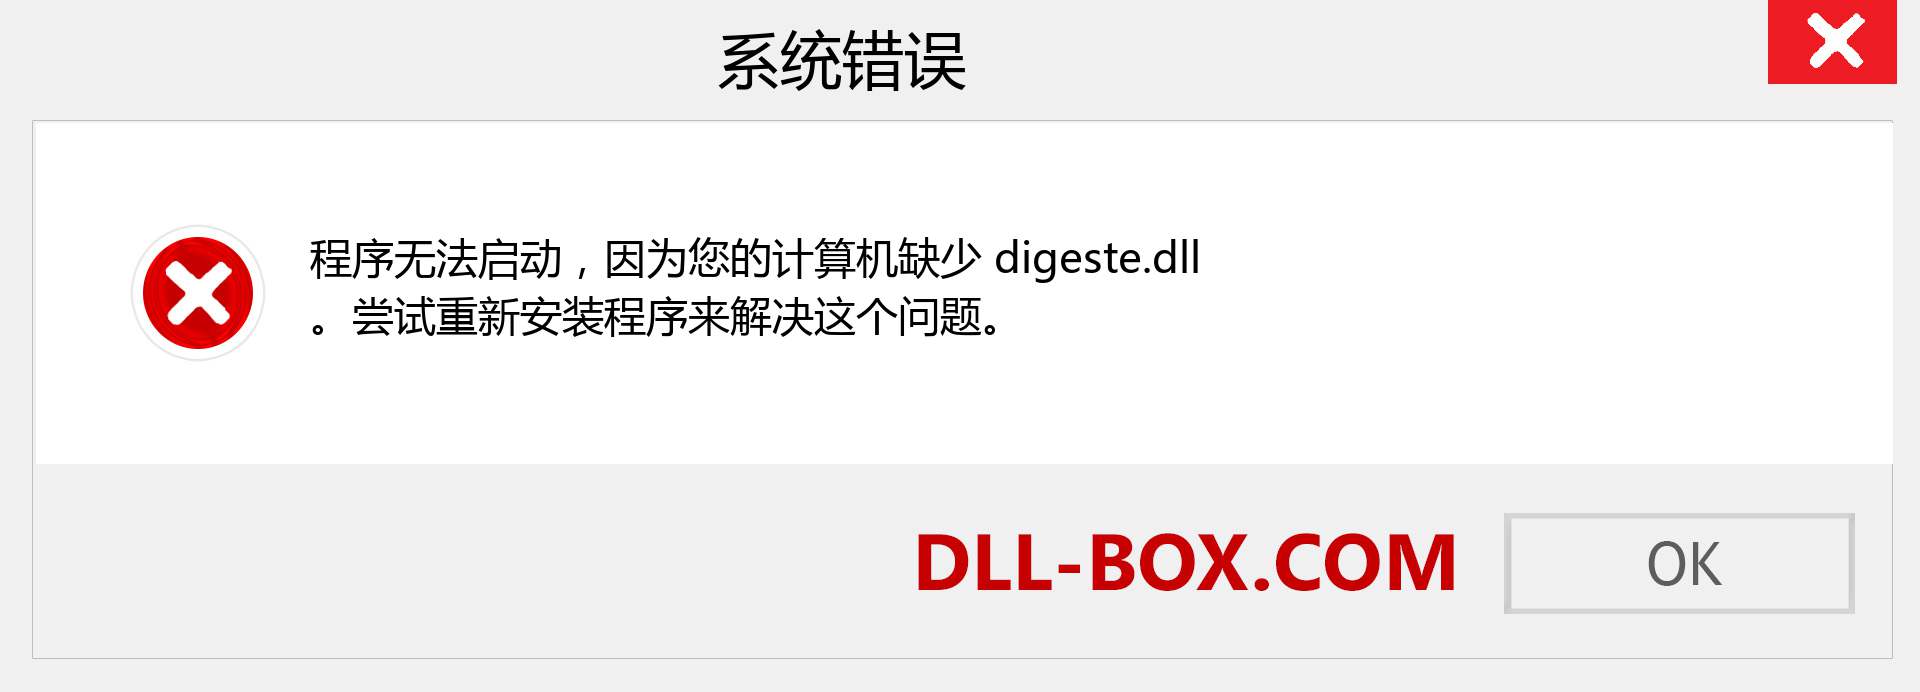 digeste.dll 文件丢失？。 适用于 Windows 7、8、10 的下载 - 修复 Windows、照片、图像上的 digeste dll 丢失错误